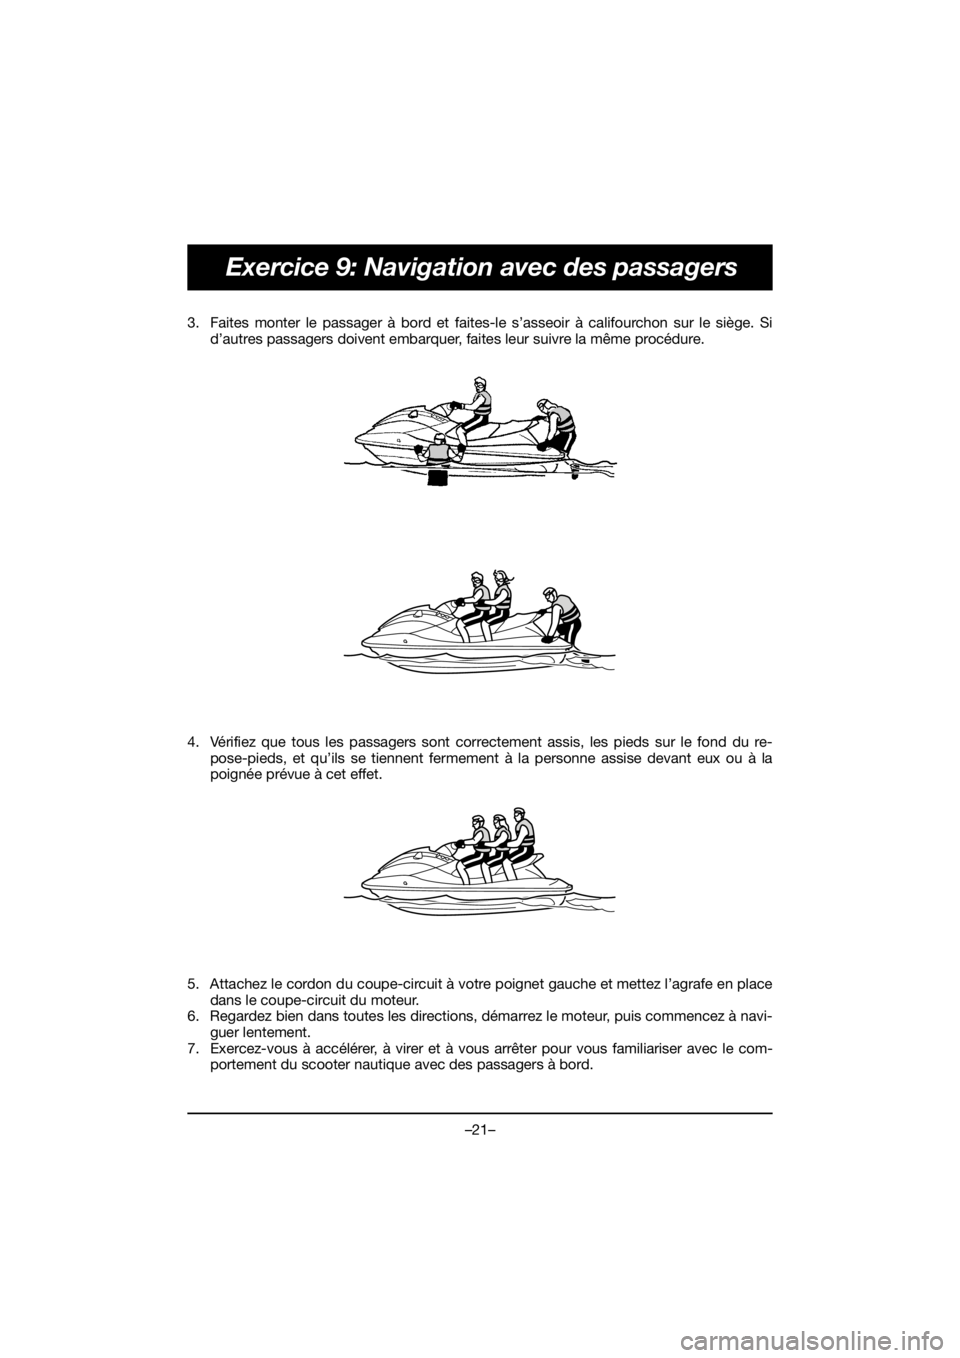 YAMAHA VX CRUISER HO 2019  Manuale duso (in Italian) –21–
Exercice 9: Navigation avec des passagers
3. Faites monter le passager à bord et faites-le s’asseoir à califourchon sur le siège. Si
d’autres passagers doivent embarquer, faites leur s